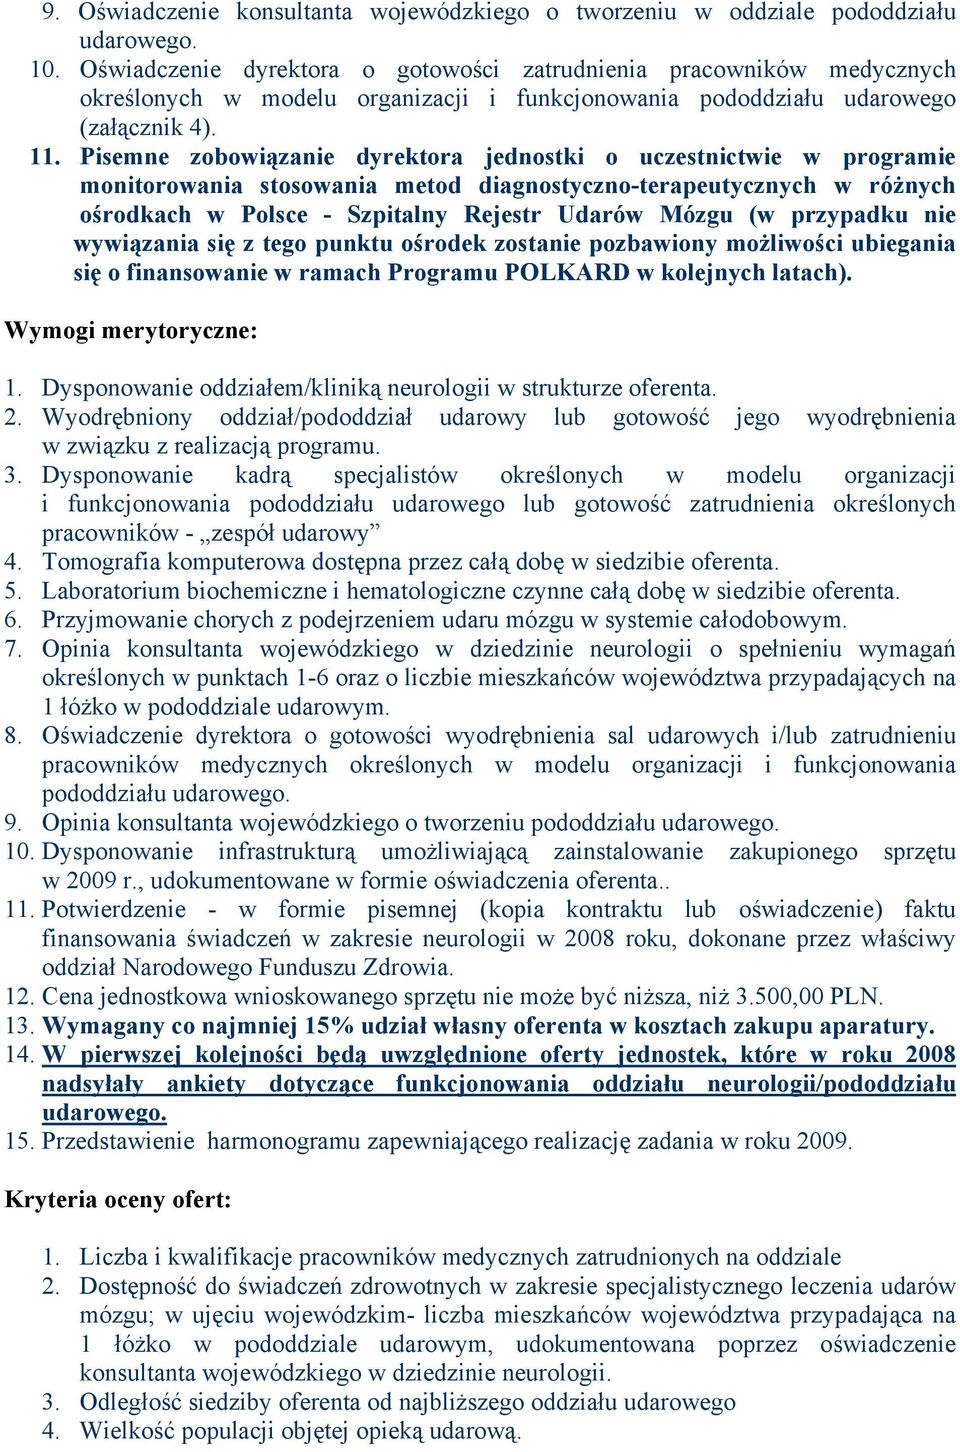 Pisemne zobowiązanie dyrektora jednostki o uczestnictwie w programie monitorowania stosowania metod diagnostyczno-terapeutycznych w różnych ośrodkach w Polsce - Szpitalny Rejestr Udarów Mózgu (w